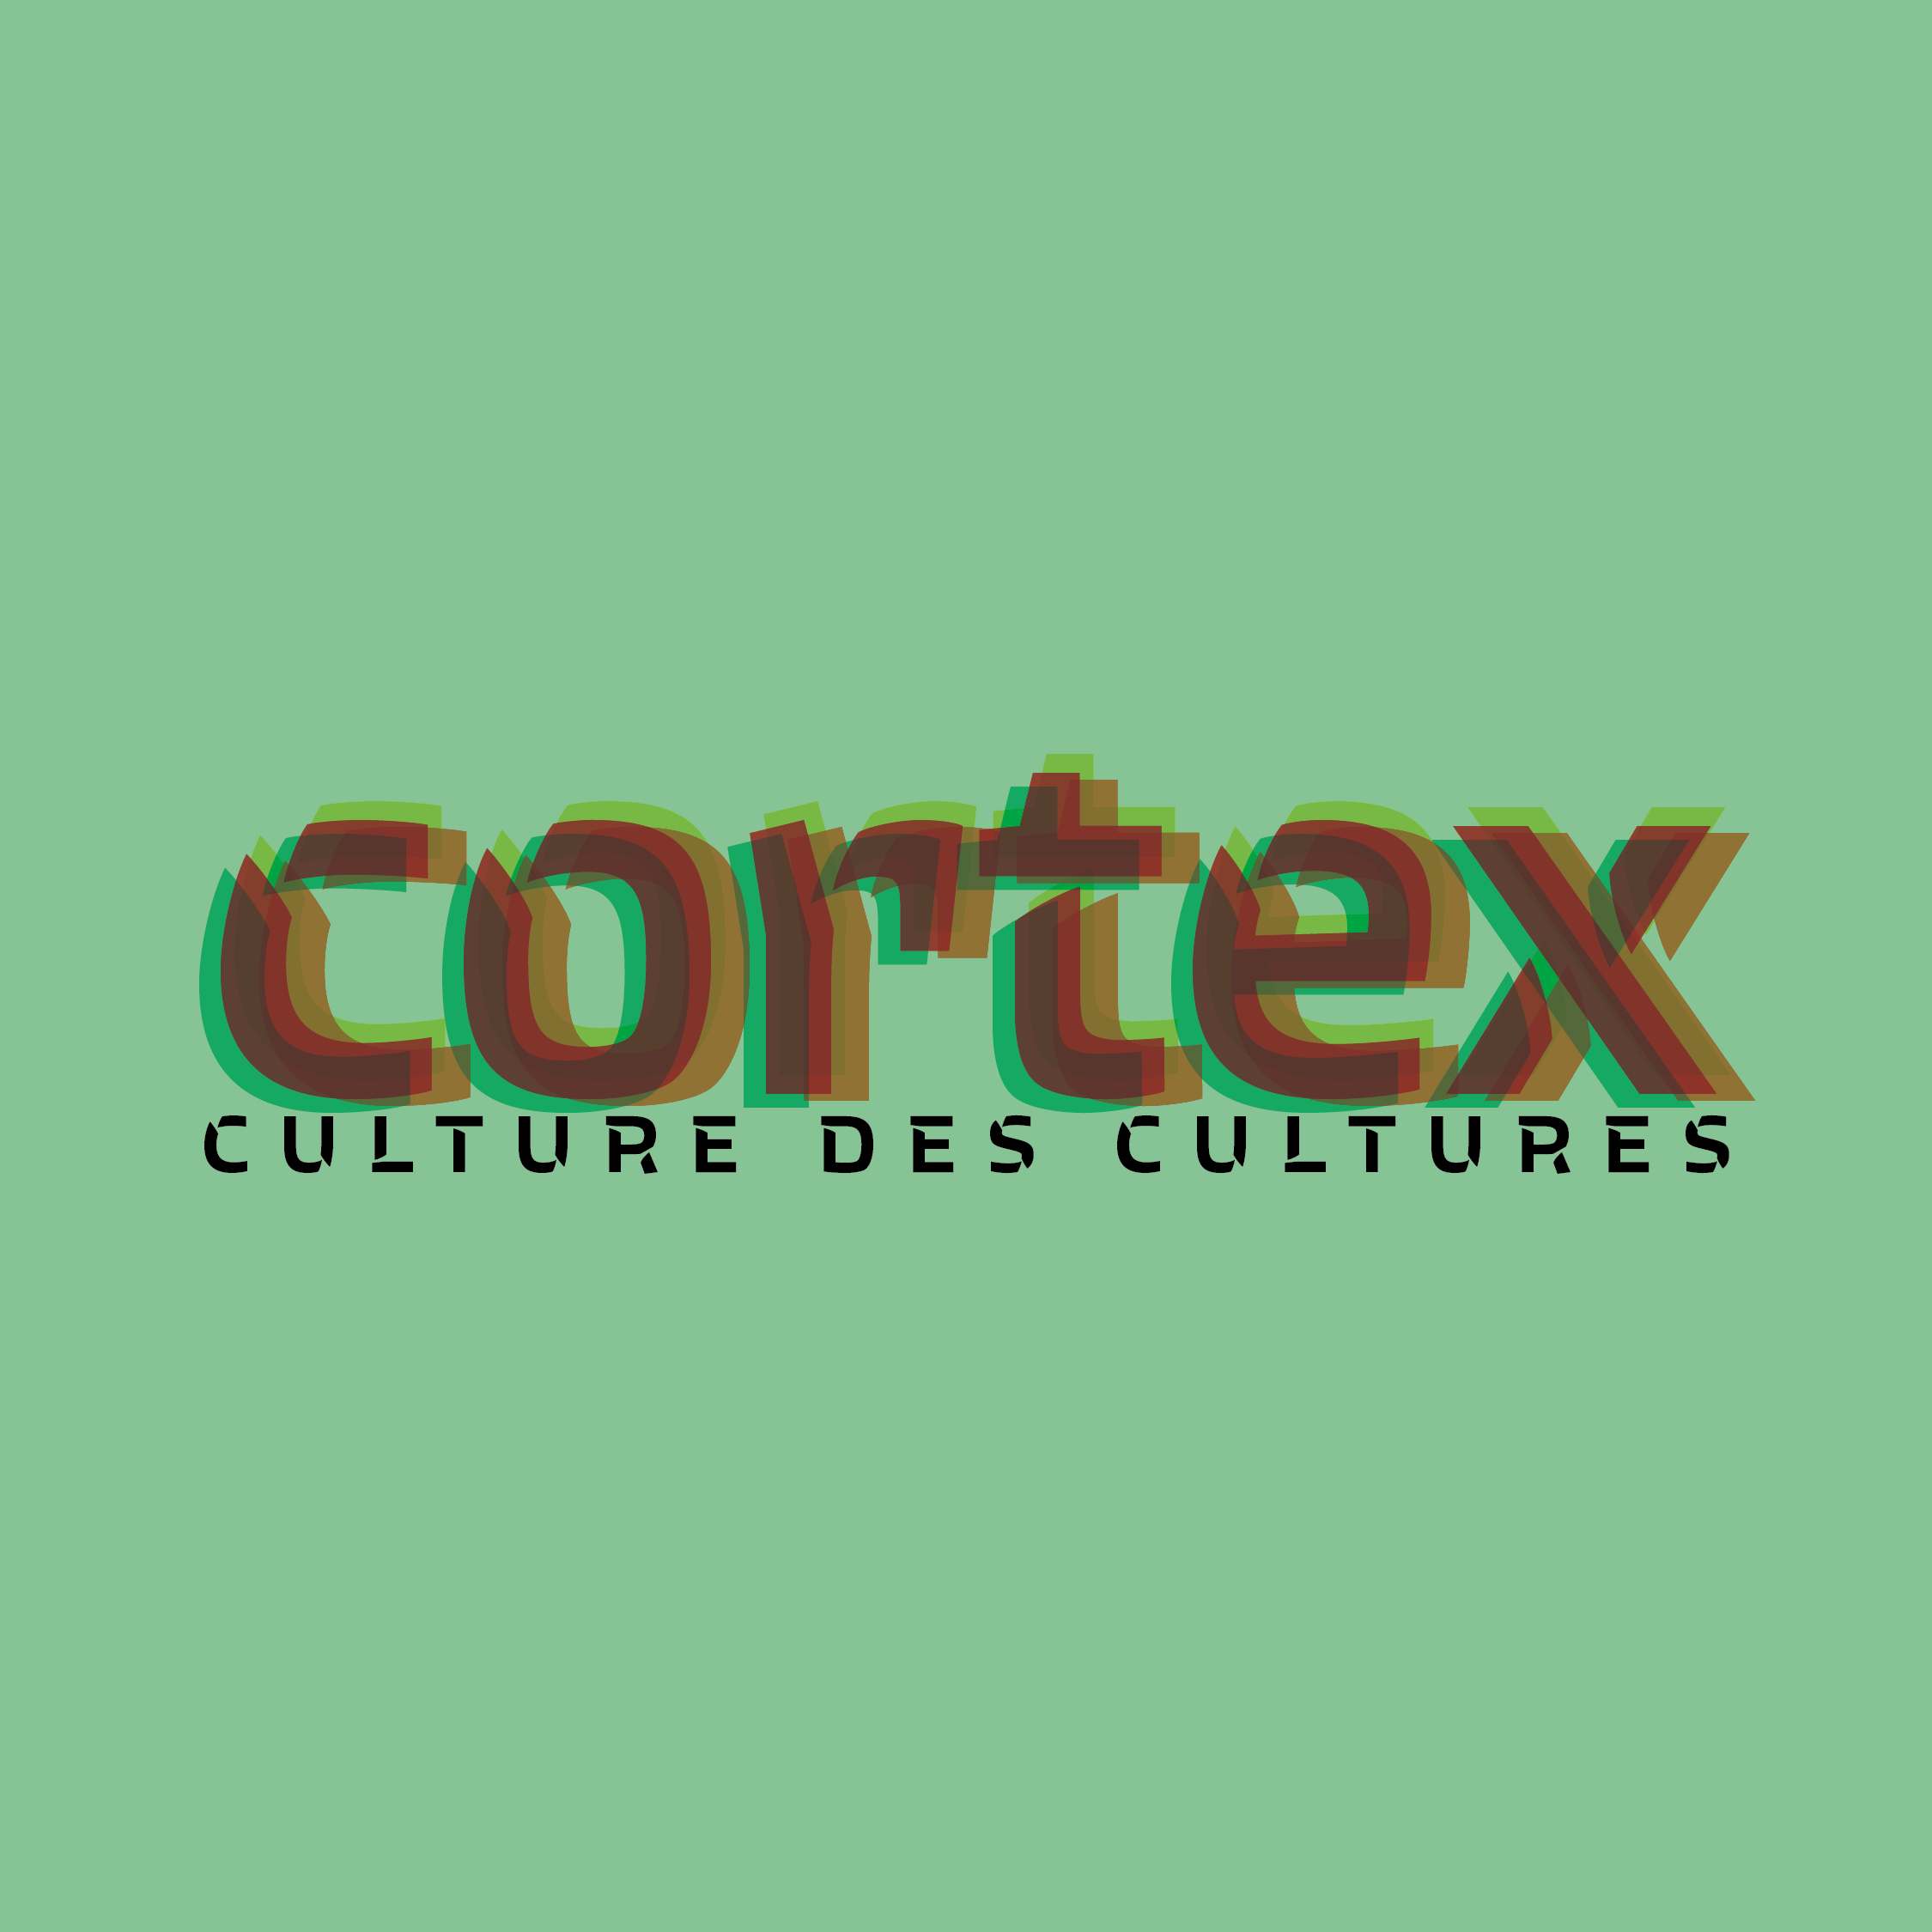 Cortex Culture des Cultures